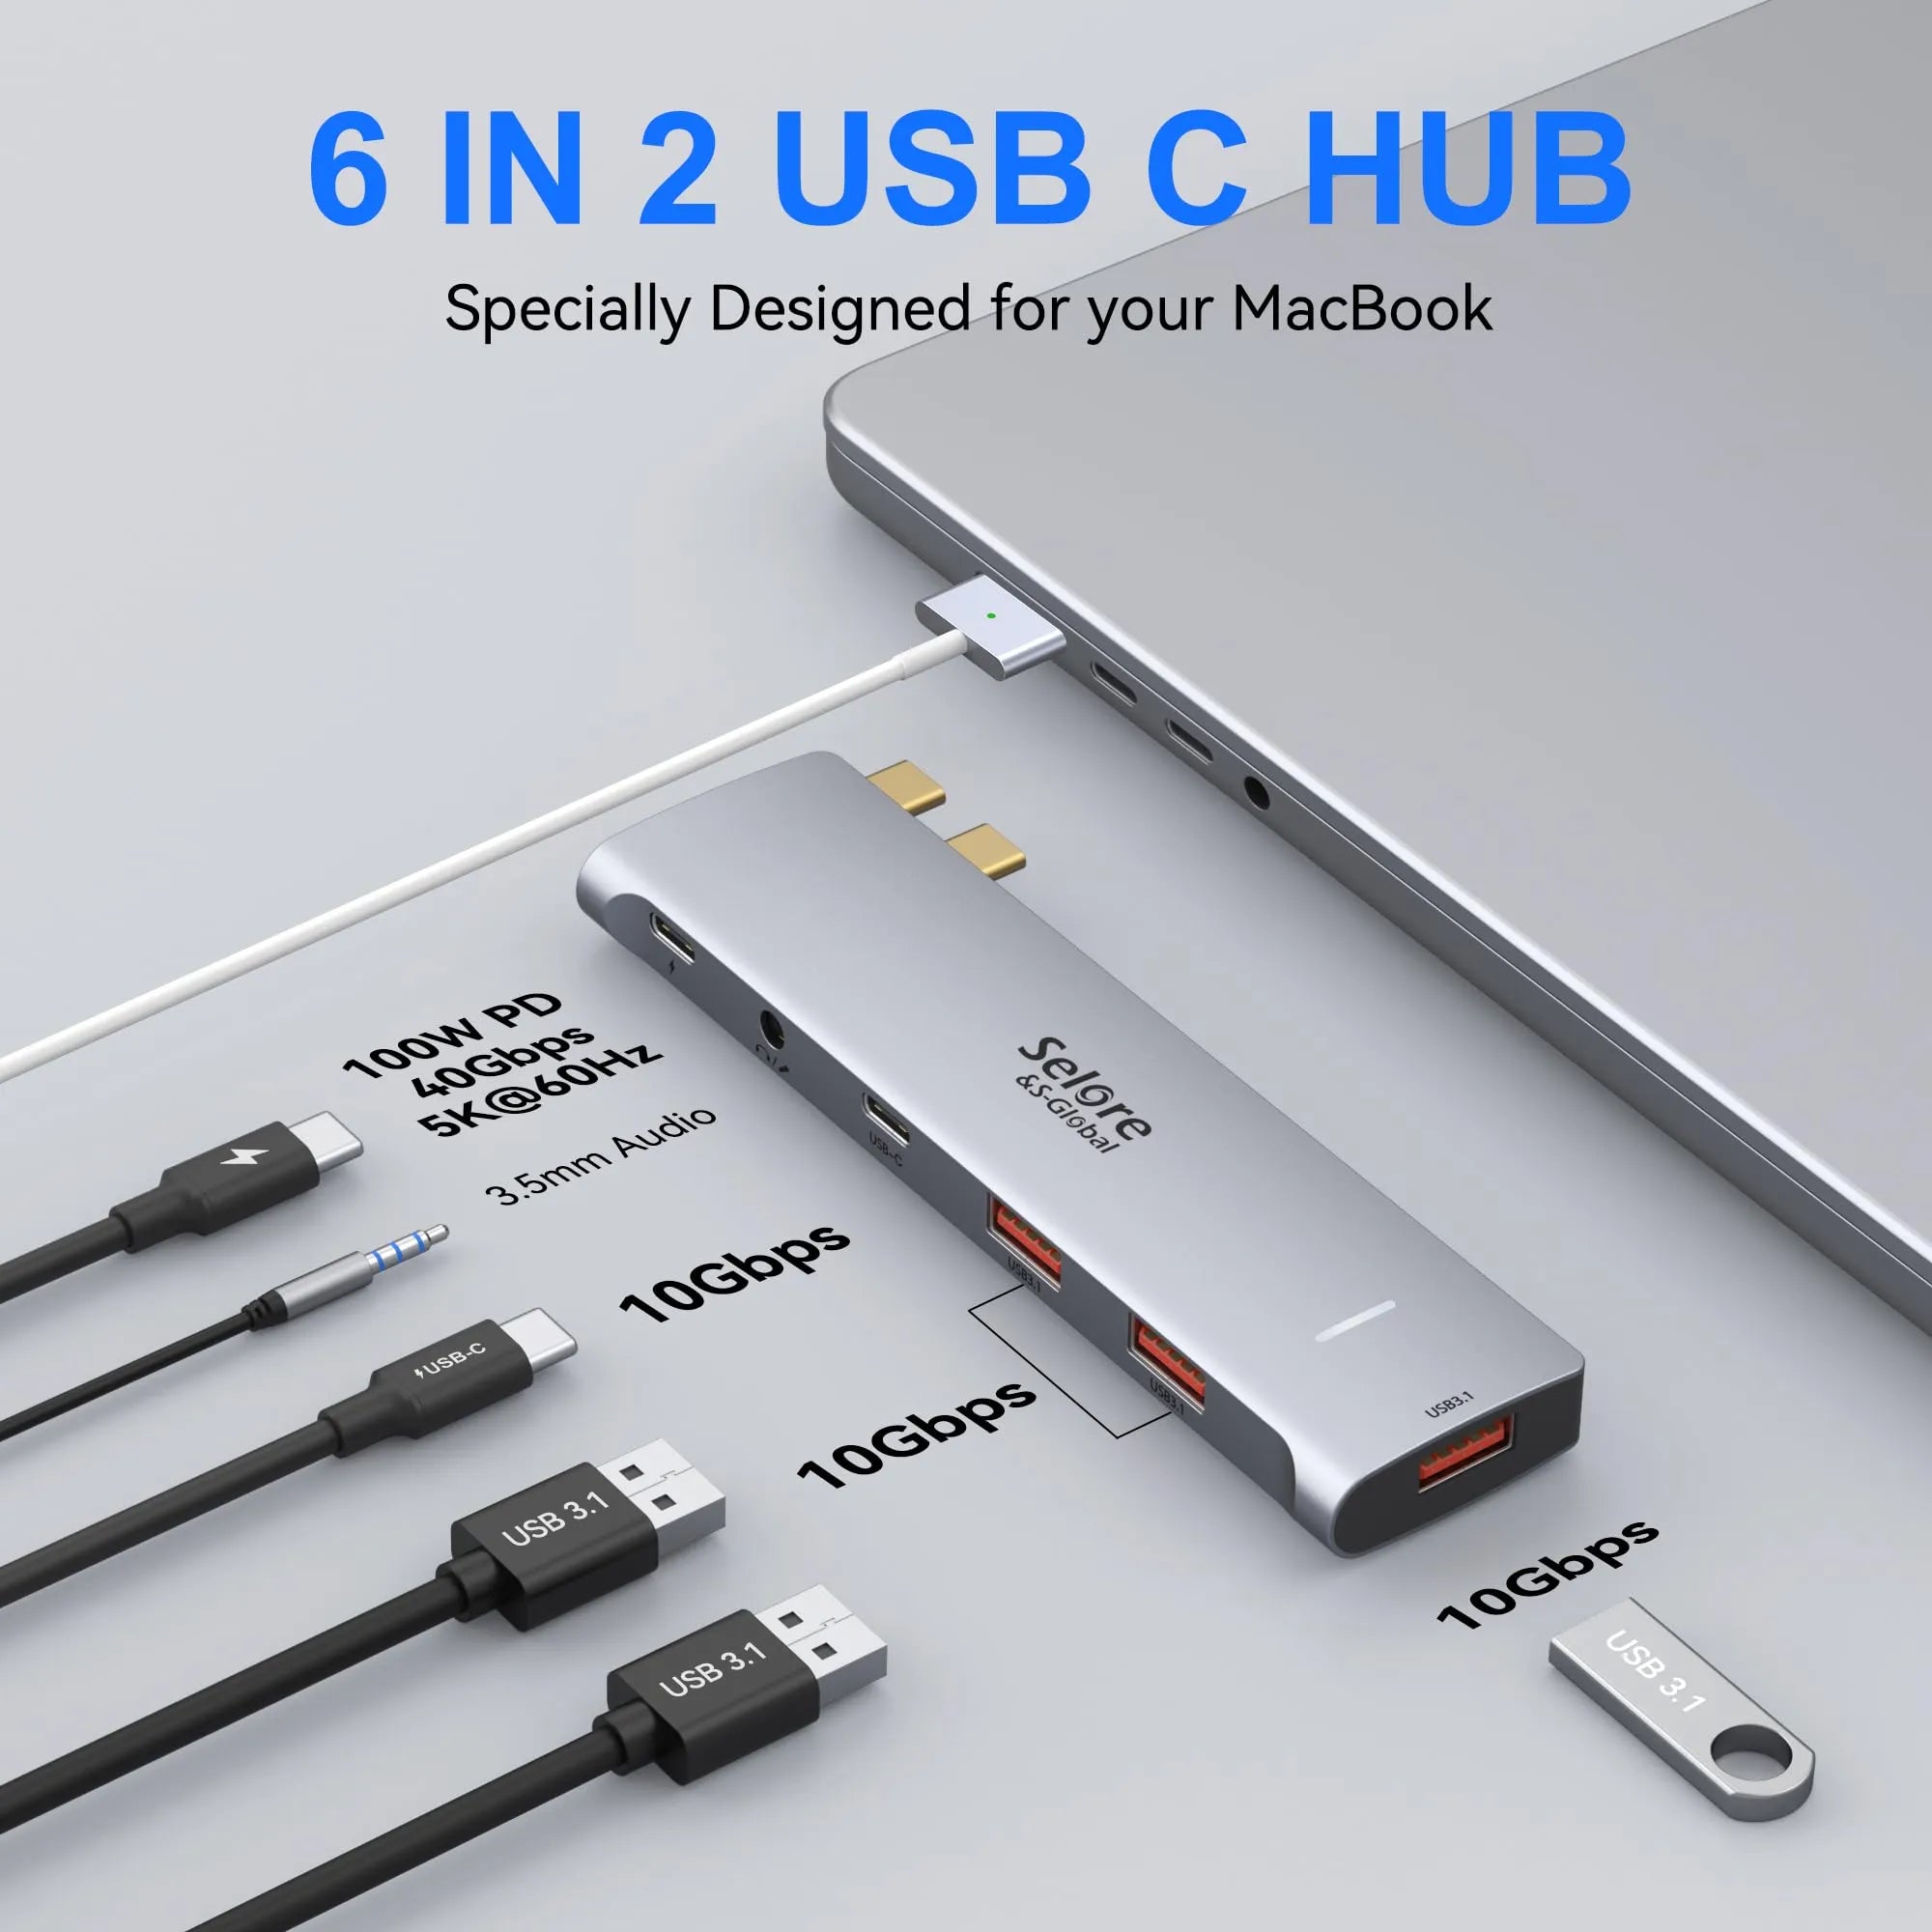 VVB USB C Hub Multiport Adapter Macbook Pro Air 6 in 1 USB C 4K